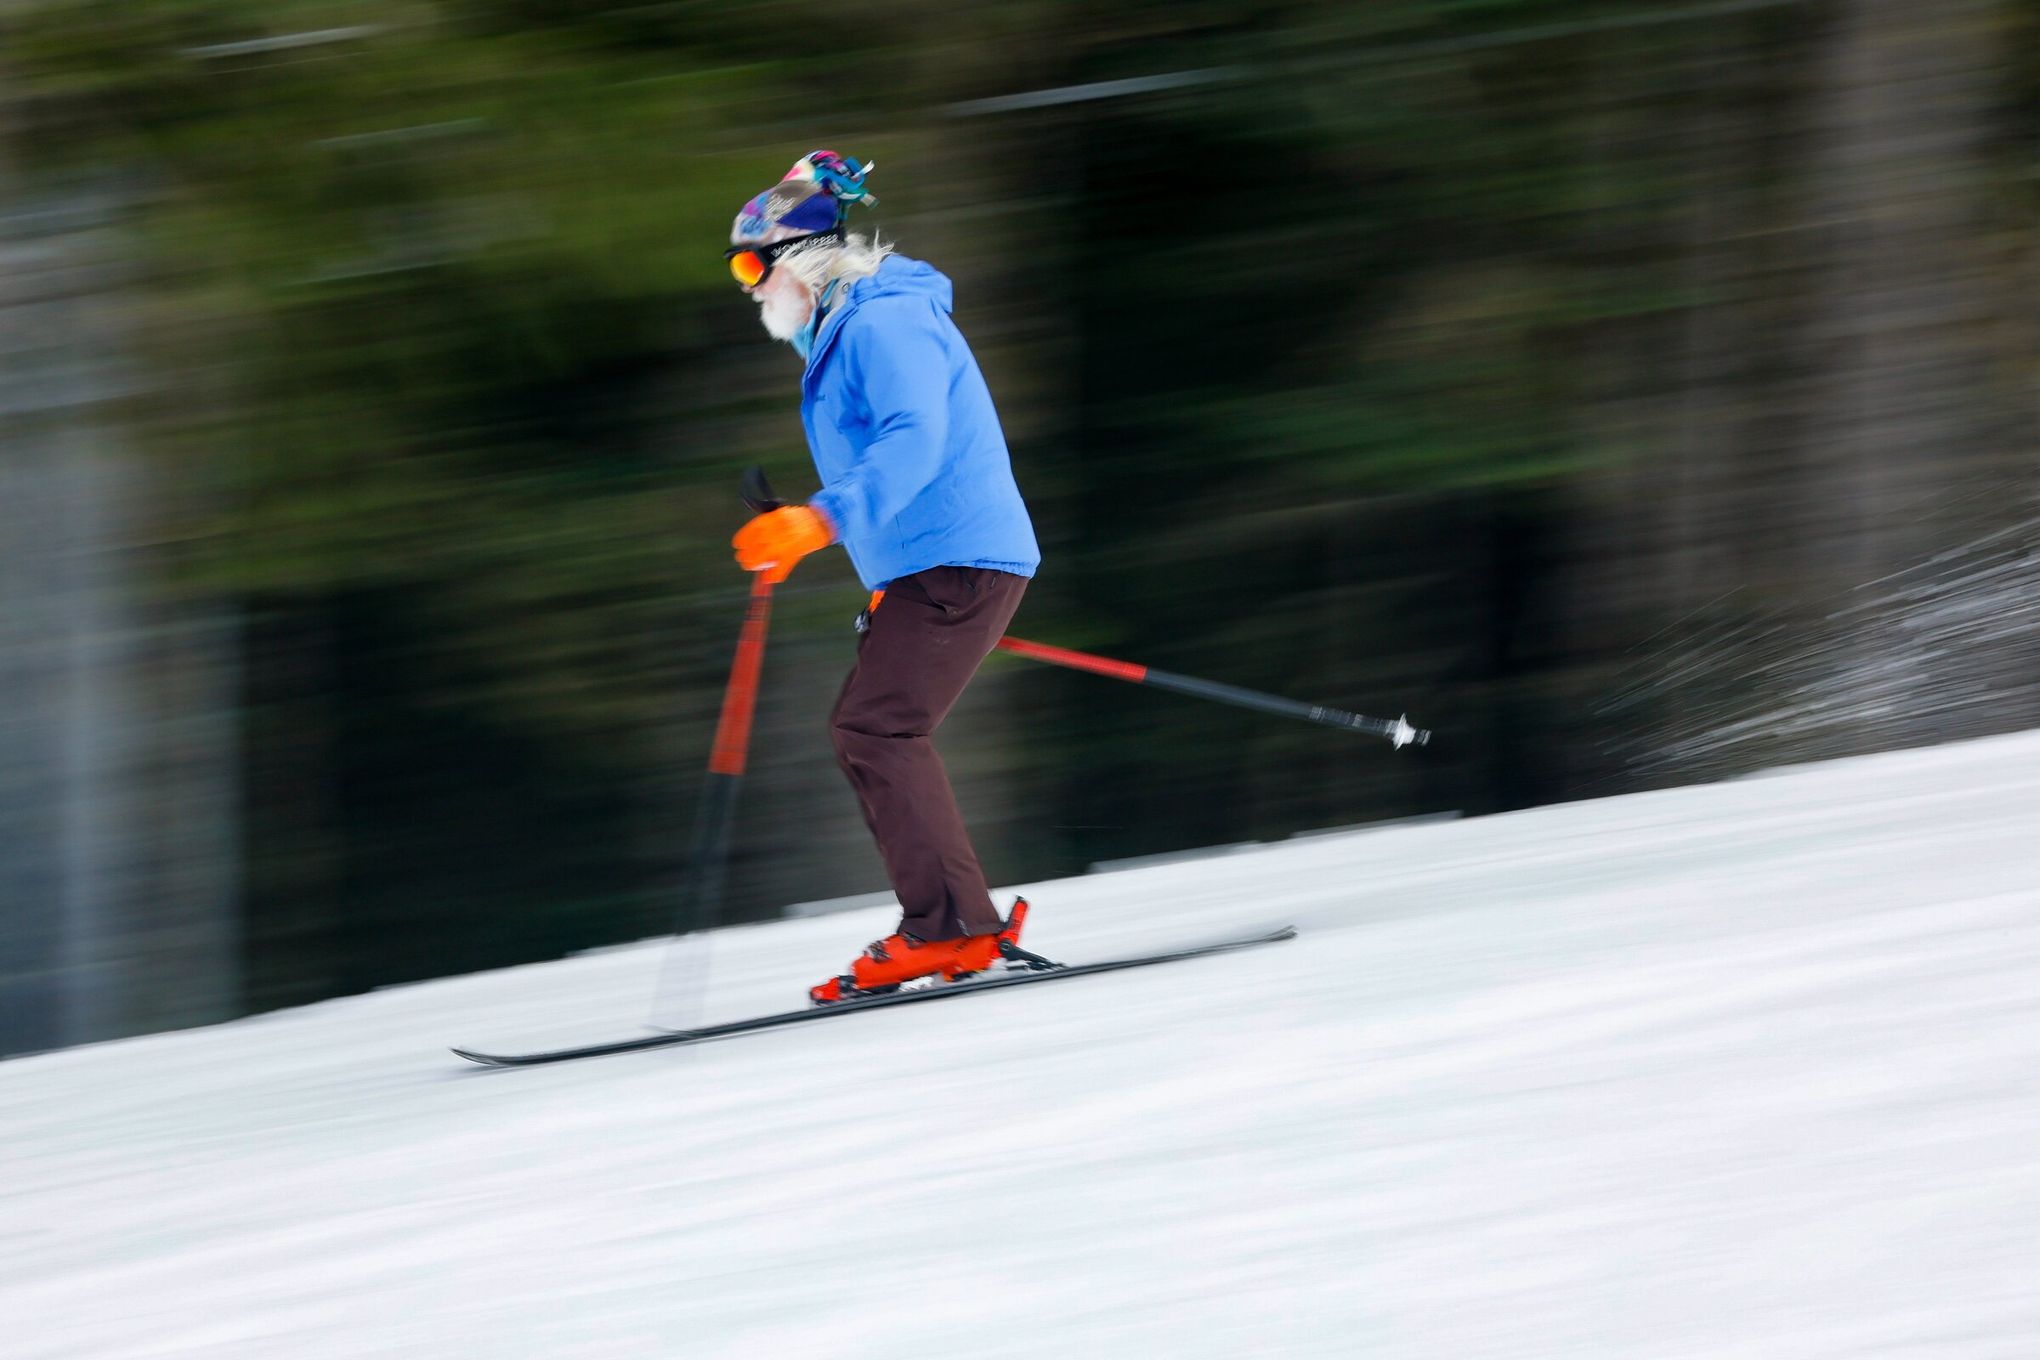 Ski Ties - keep your skis together - Ski Market